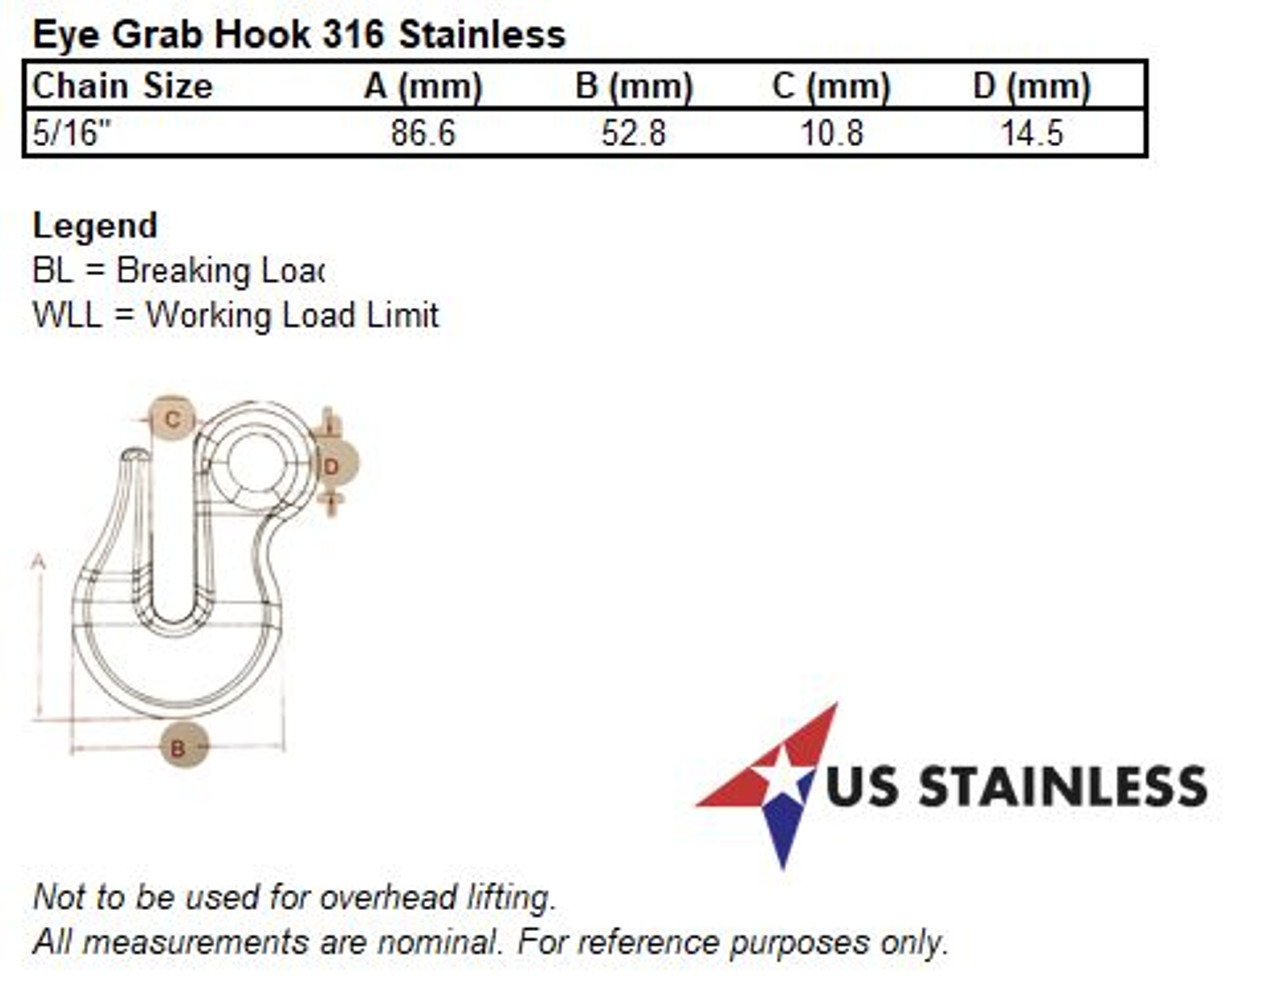 Stainless Steel 316 Eye Grab Hook 5/16 x 3 1/4 Marine Grade